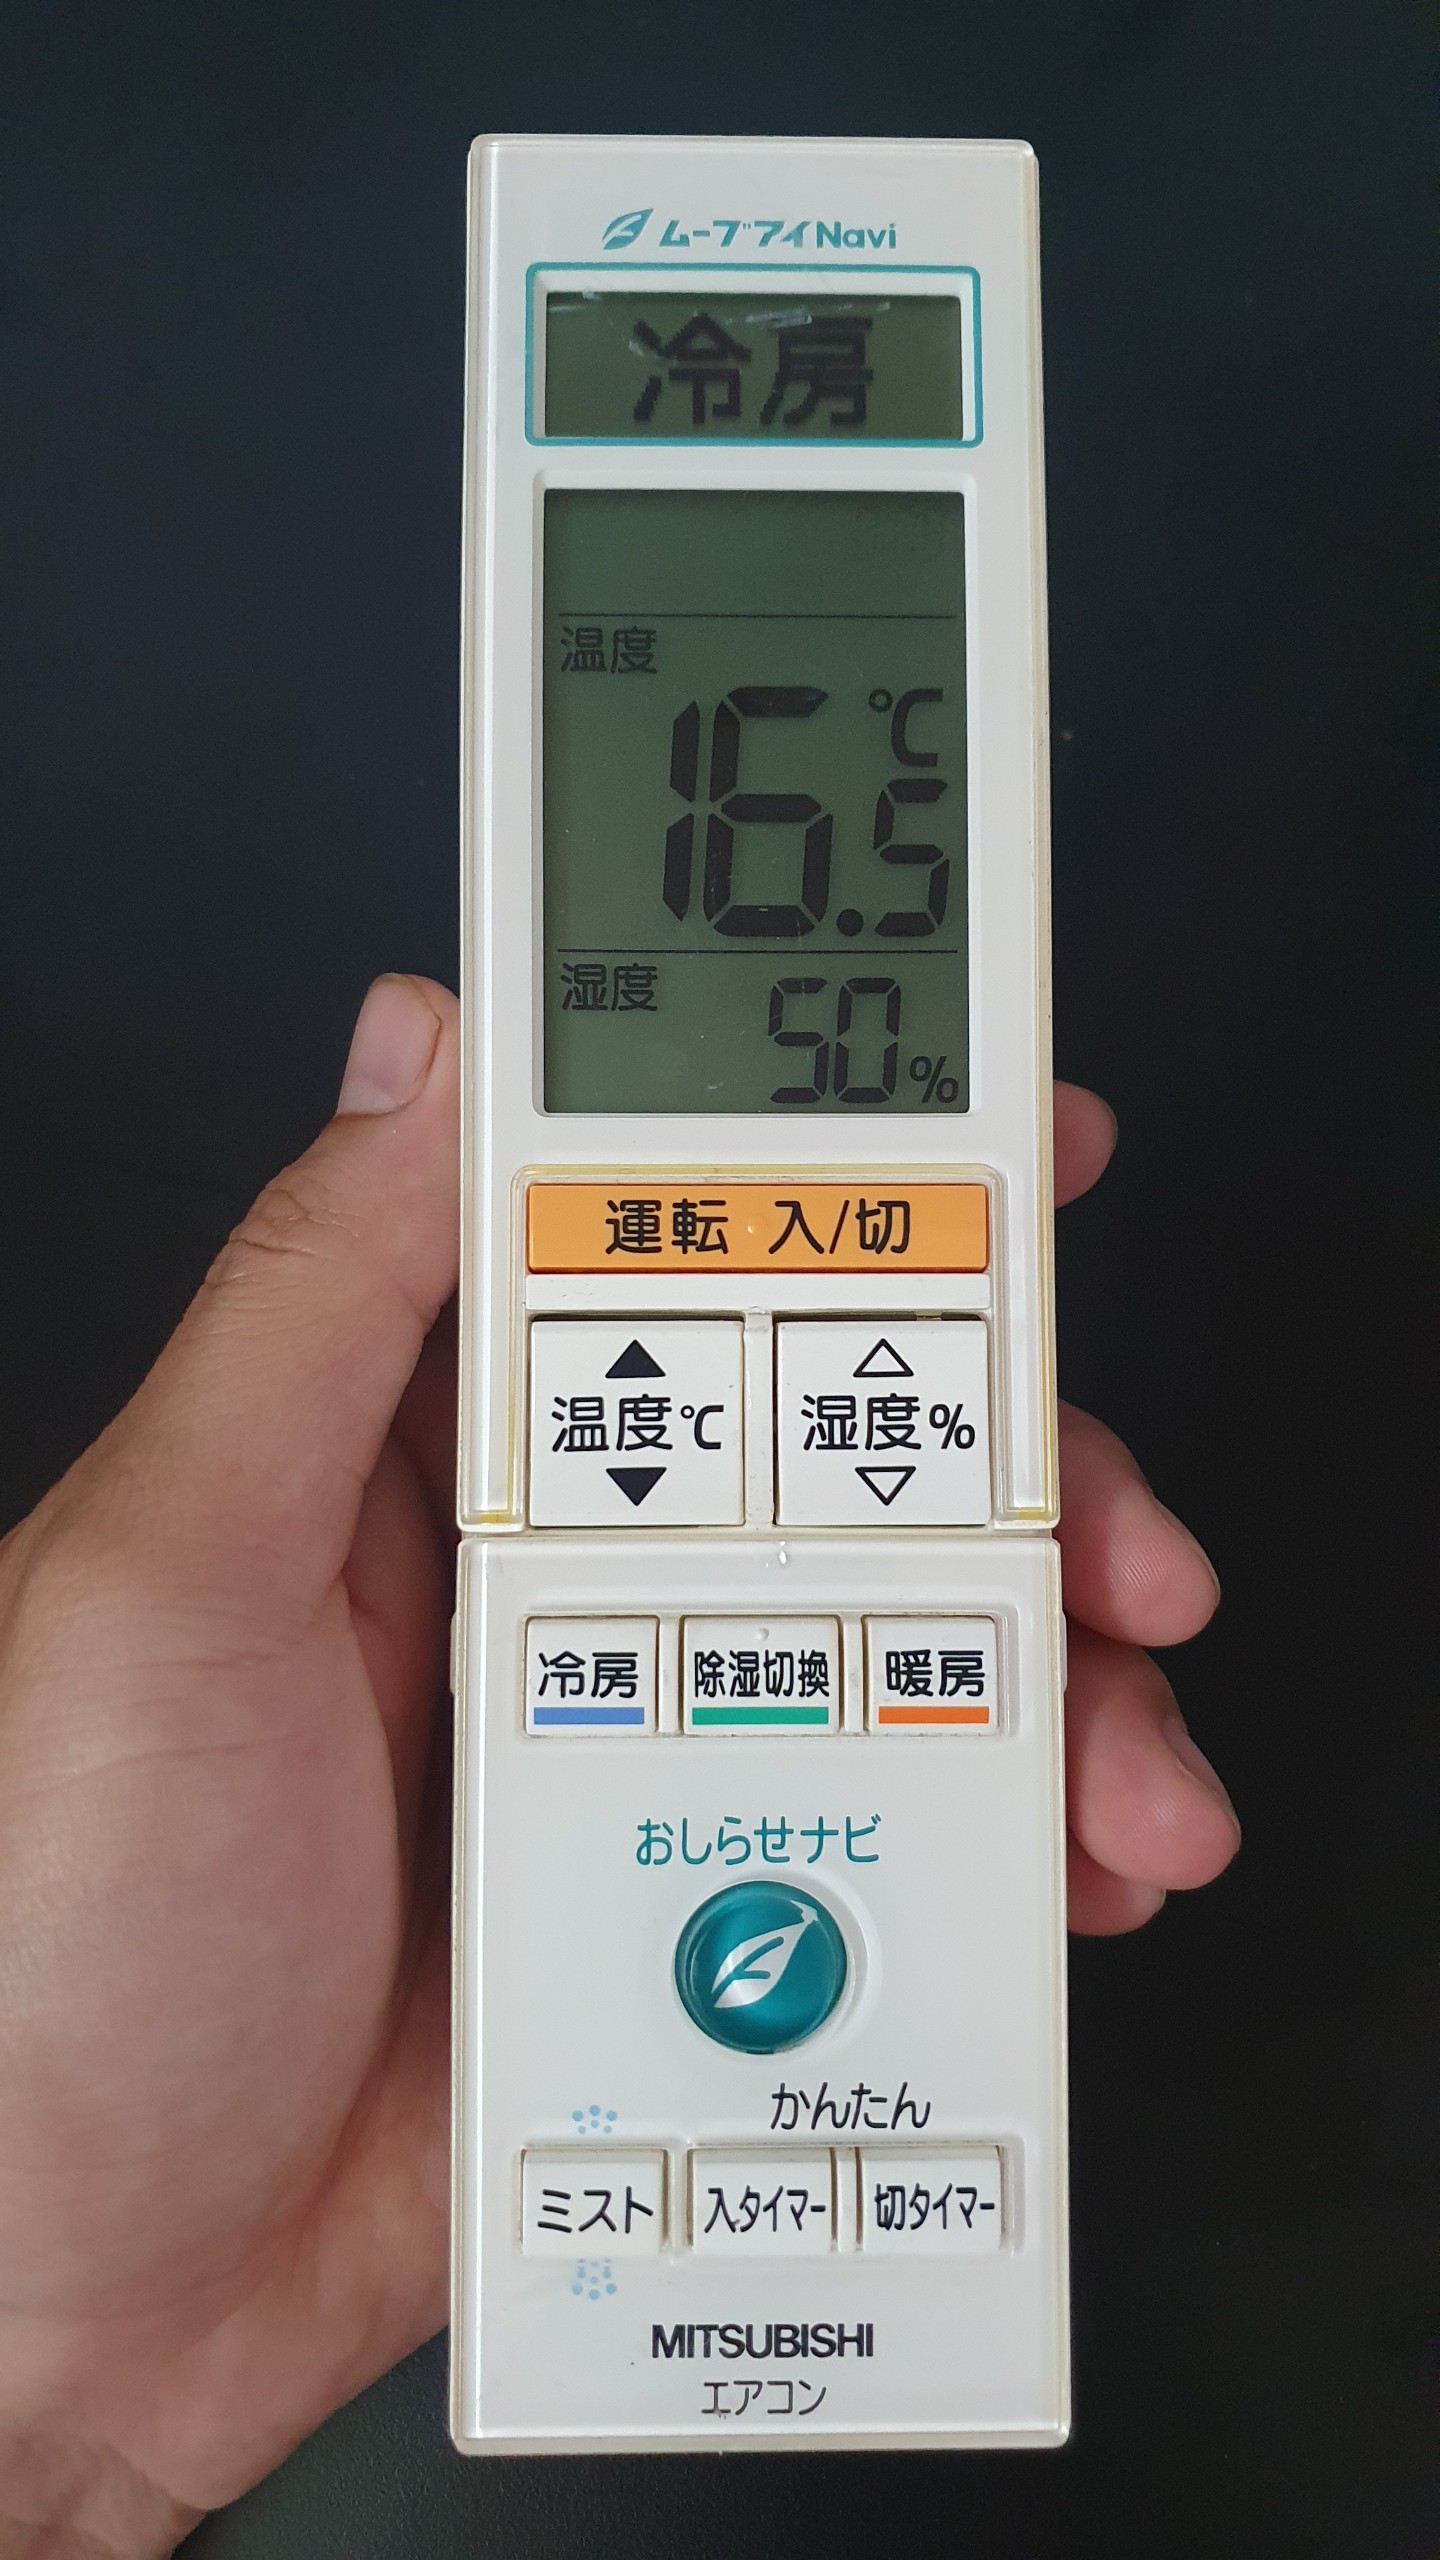 Remote Máy Lạnh Mitsubishi Nội Địa Nhật Đa Năng M211V3426